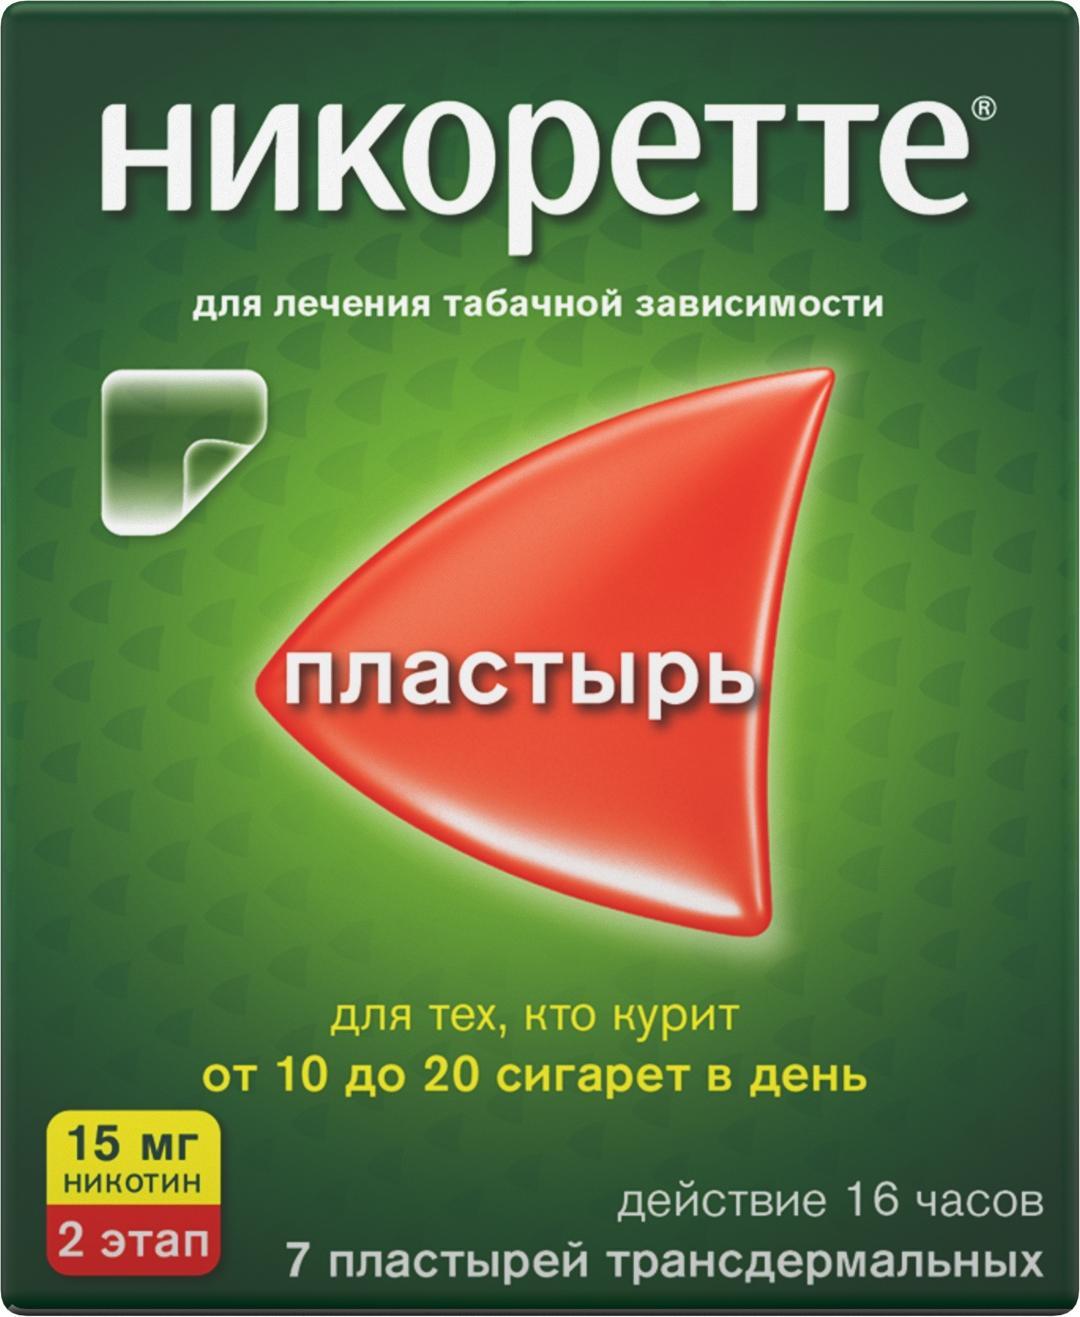 Никоретте, пластырь трансдермальный полупрозрачный 15 мг/16 ч, 7 шт.